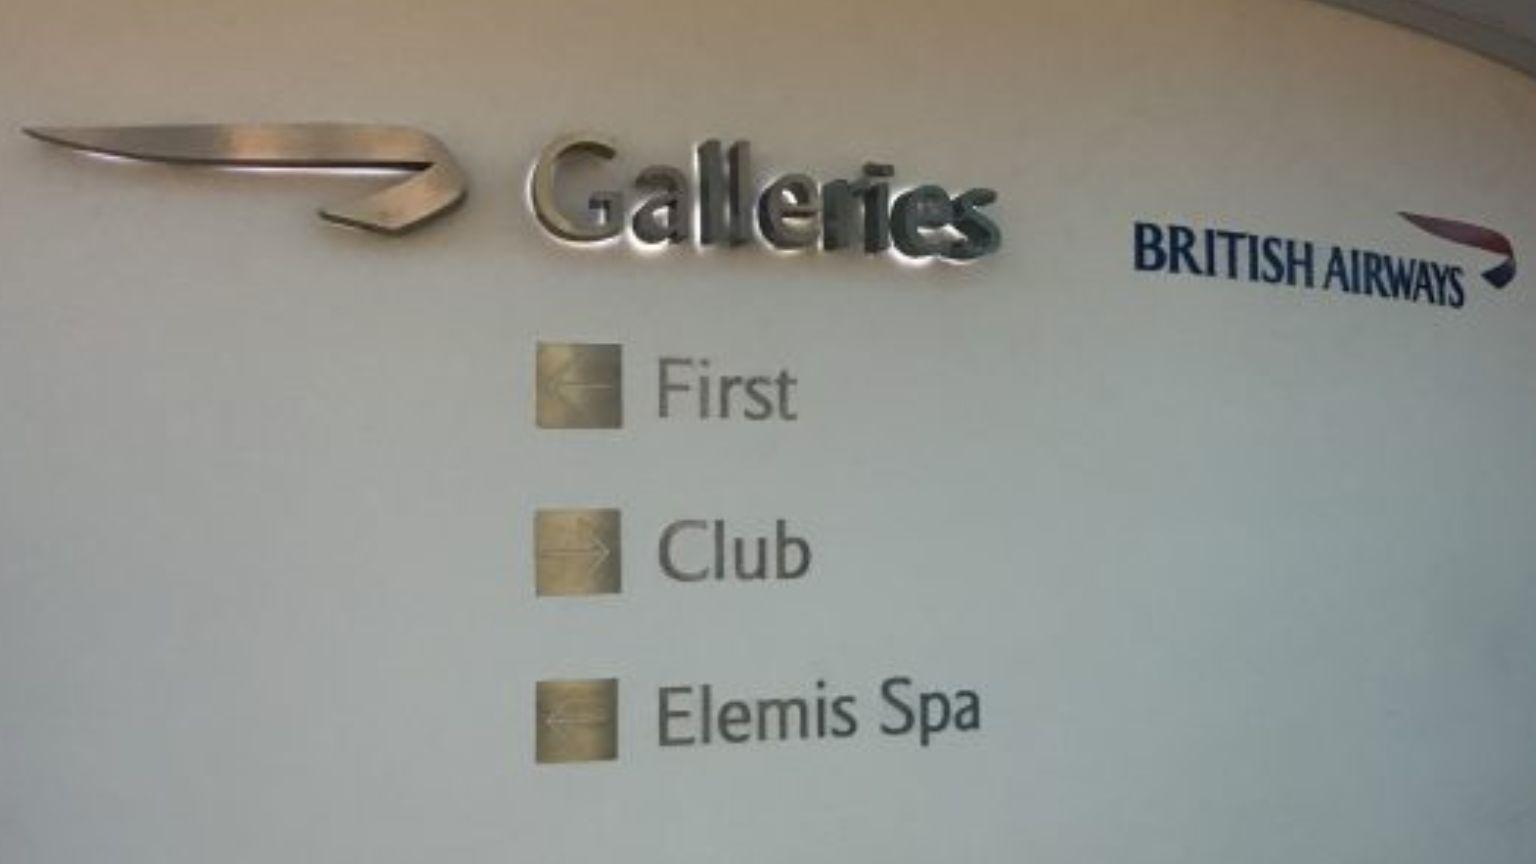 British Airways Galleries Club Lounge, Terminal 3 LHR